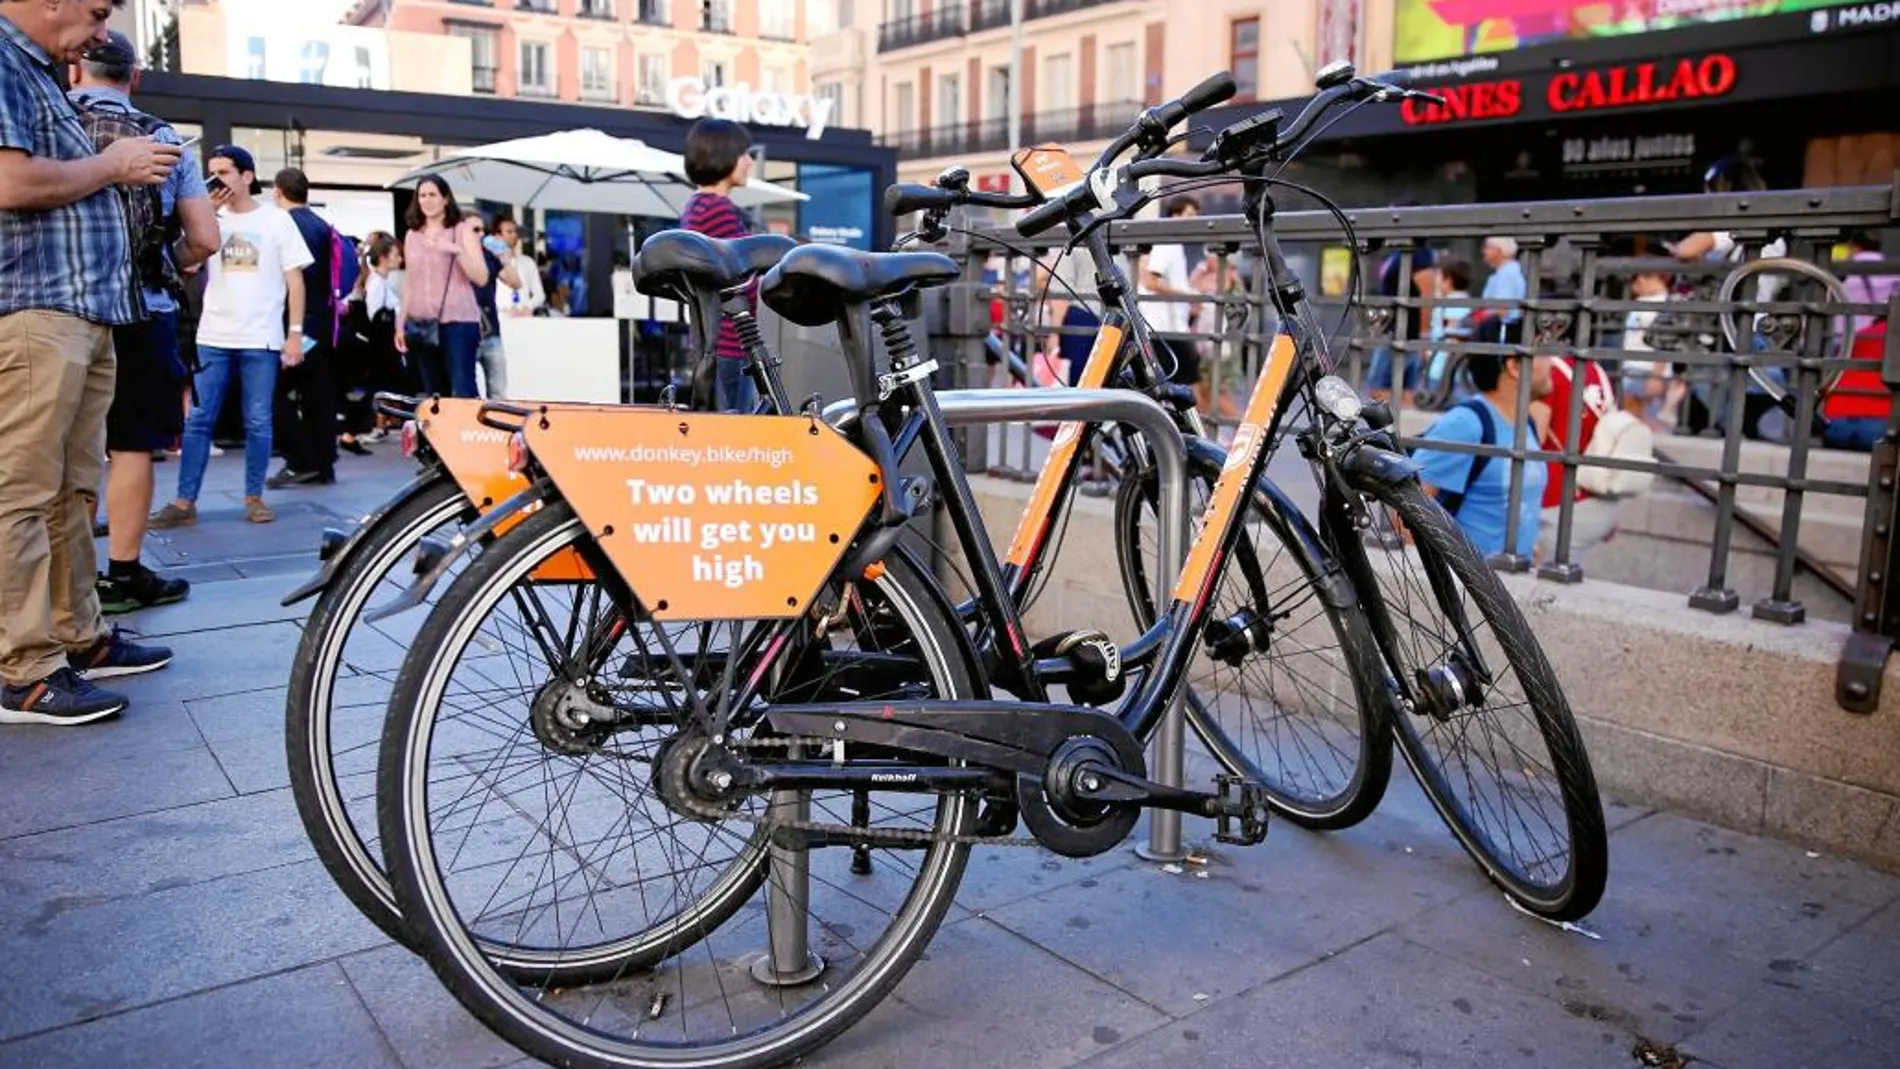 Las grandes compañías asiáticas de alquiler de bicicletas sin anclajes acaban de aterrizar en Madrid con más de 400 ejemplares.Bicis de alquiler mediante App.